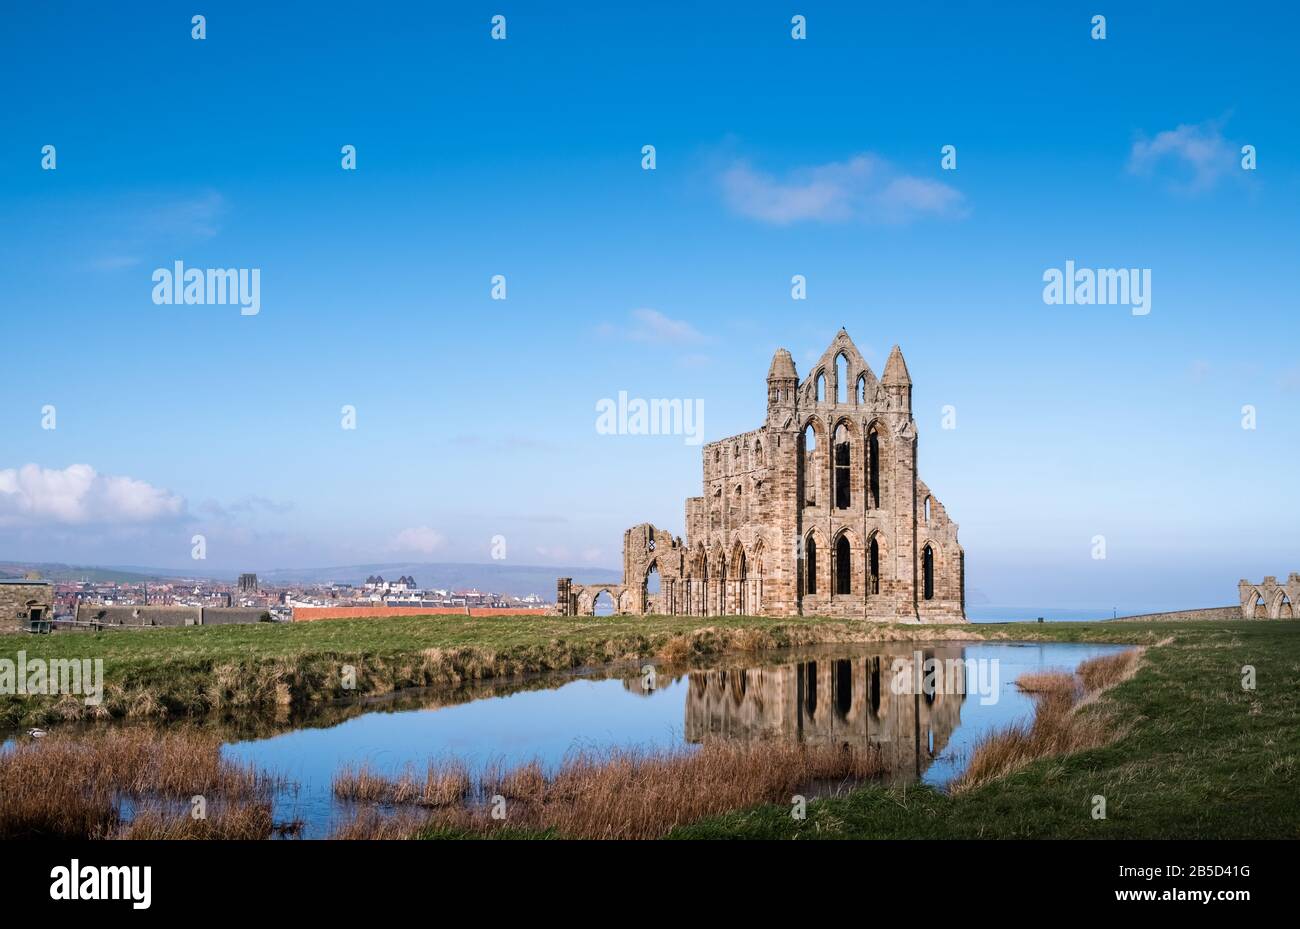 Abbaye de Whitby, les vestiges ruinés d'une abbaye bénédictine du VIIe siècle située sur la côte nord du Yorkshire, au Royaume-Uni, et un bâtiment Classé de première année. Banque D'Images